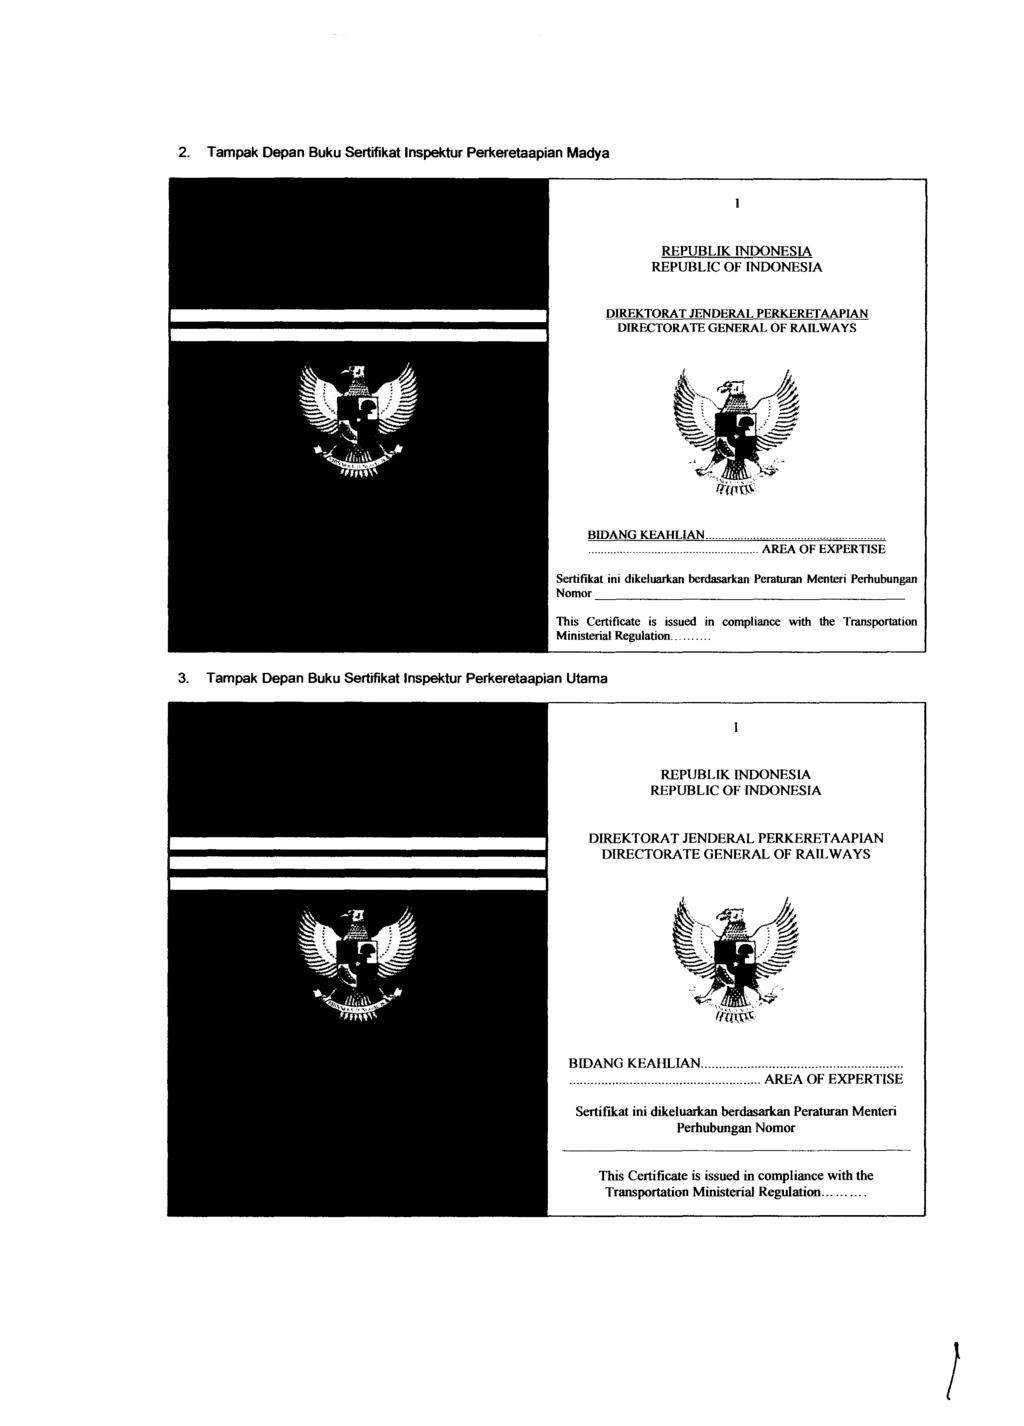 REPUBLIK INDONESIA REPUBLIC OF INDONESIA DIREKTORA T JENDERAL PERKERETAAPIAN DIRECTORATE GENERAL OF RAILWAYS BIDANG KEAHLlAN.